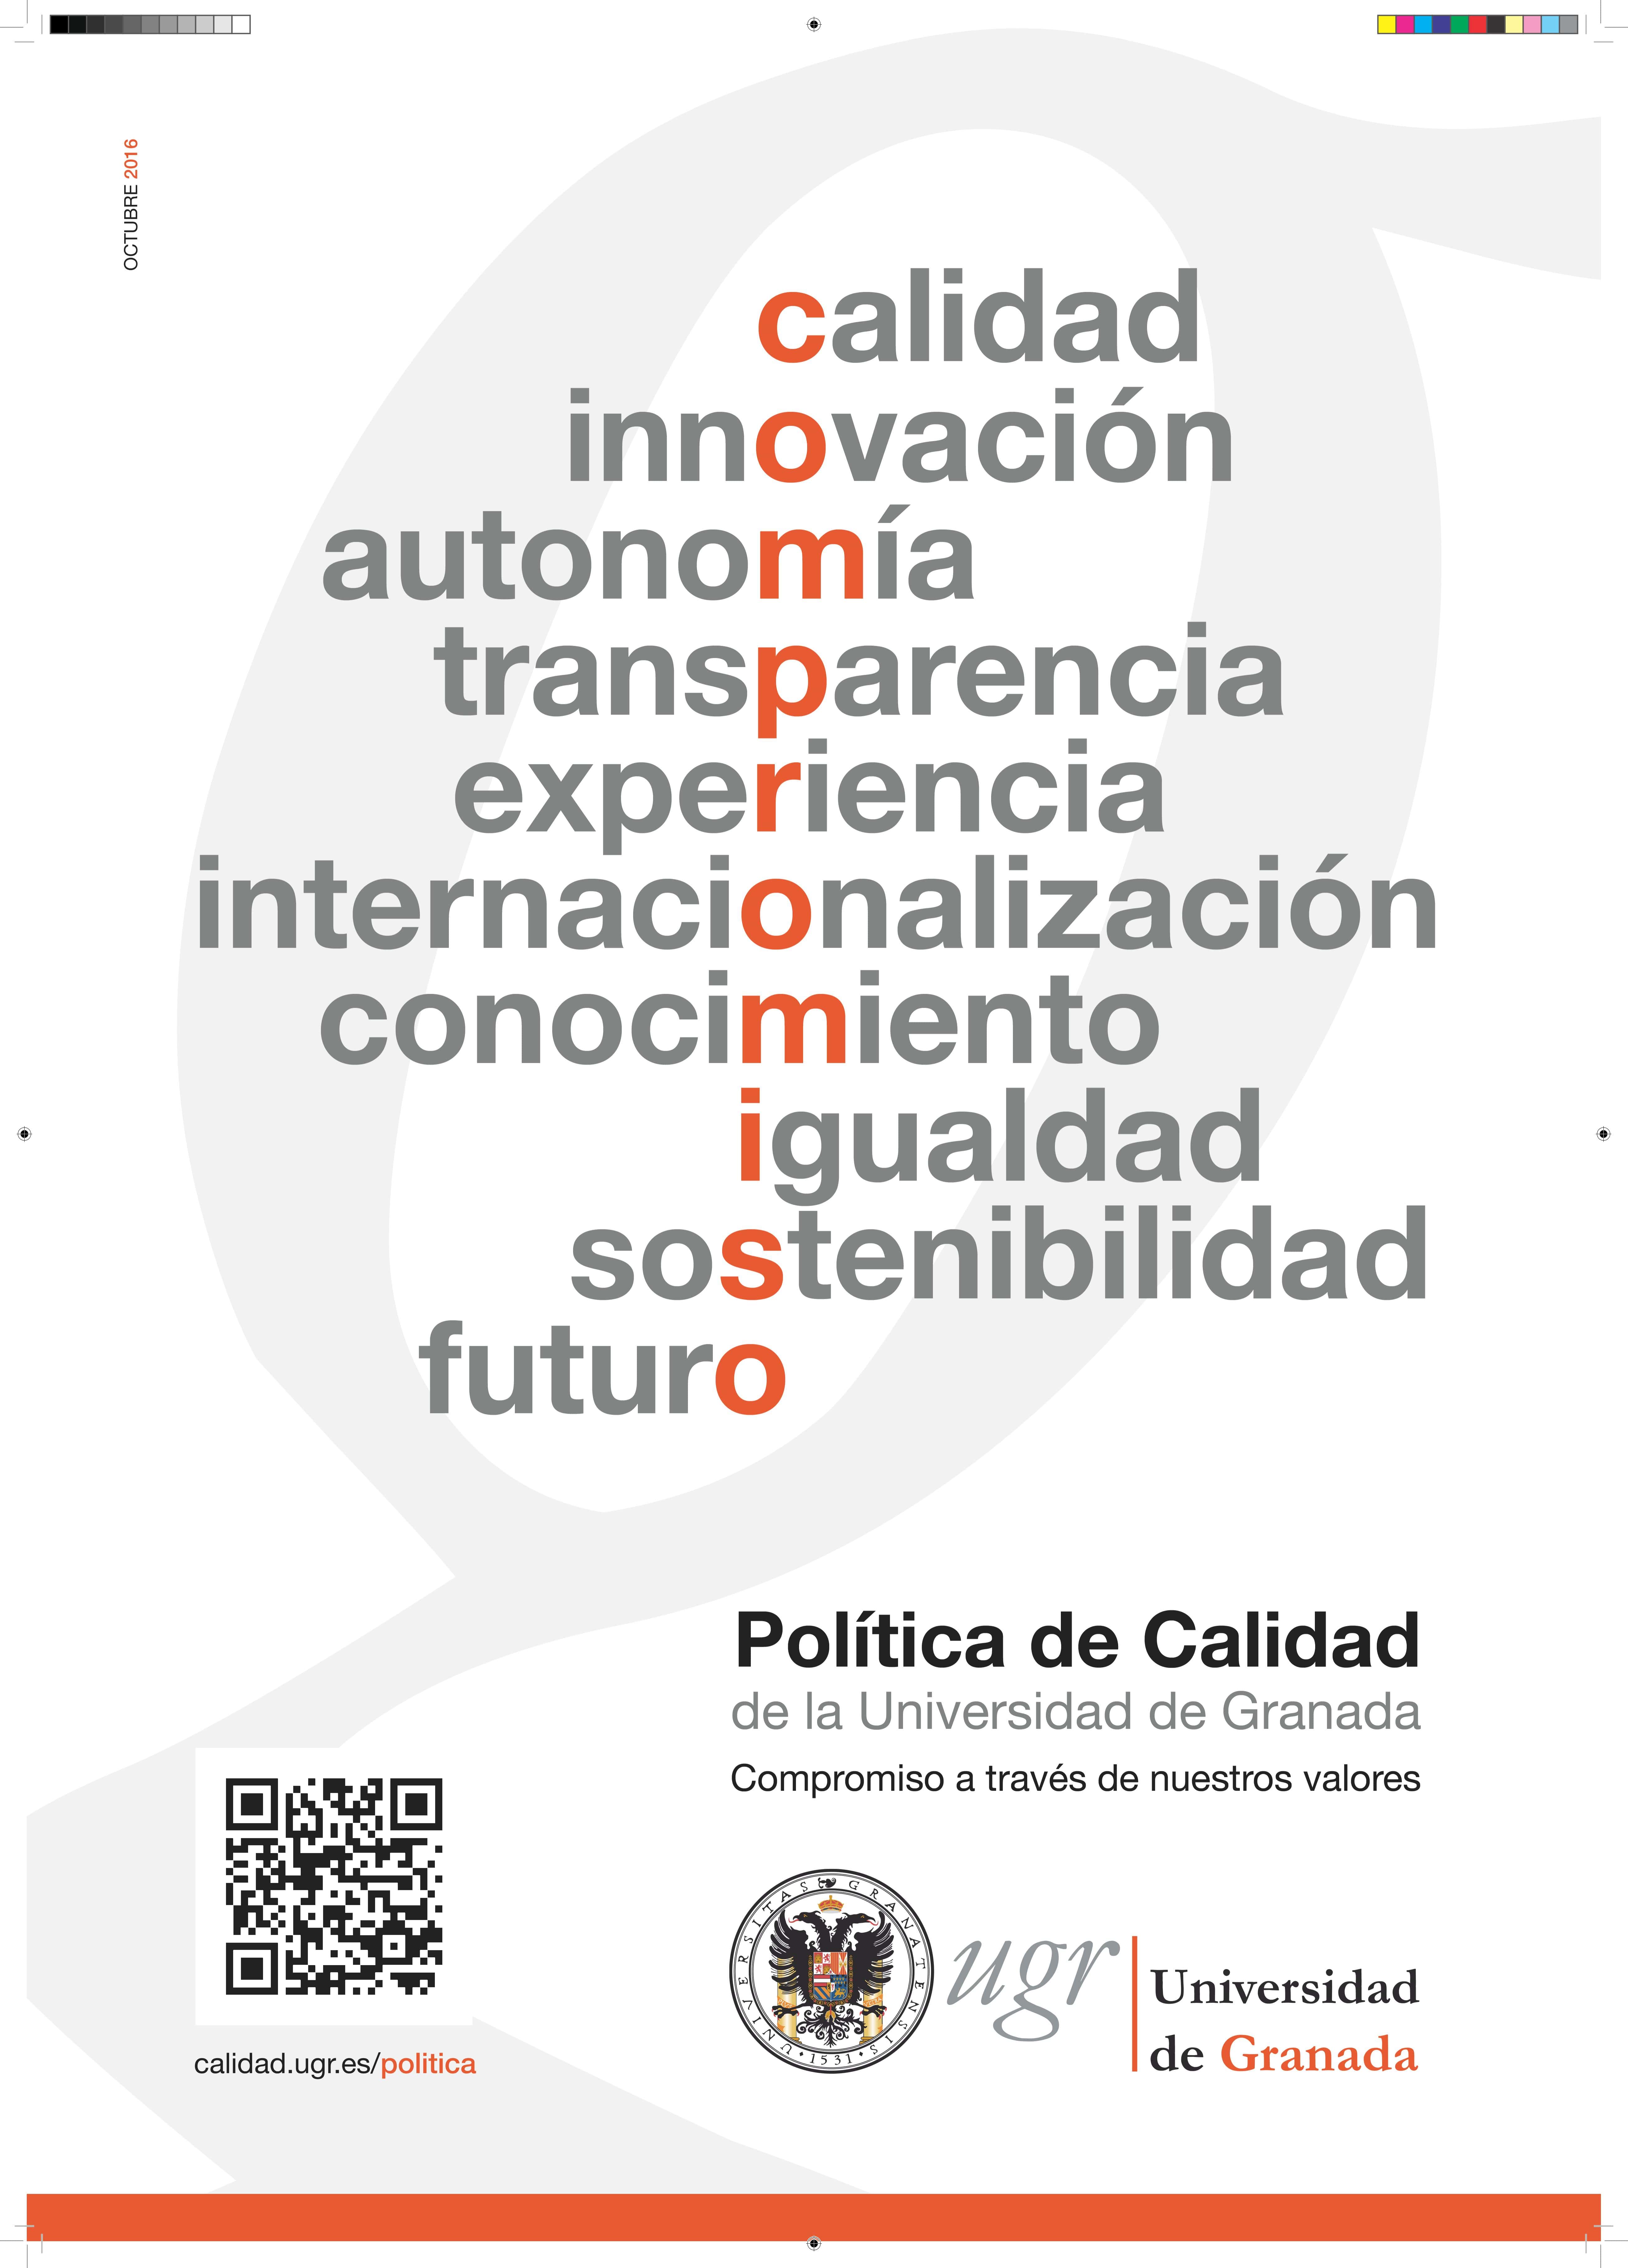 Cartel de calidad de la Universidad de Granada. Distintas palabras sobre valores se unen para dar lugar al término compromiso.